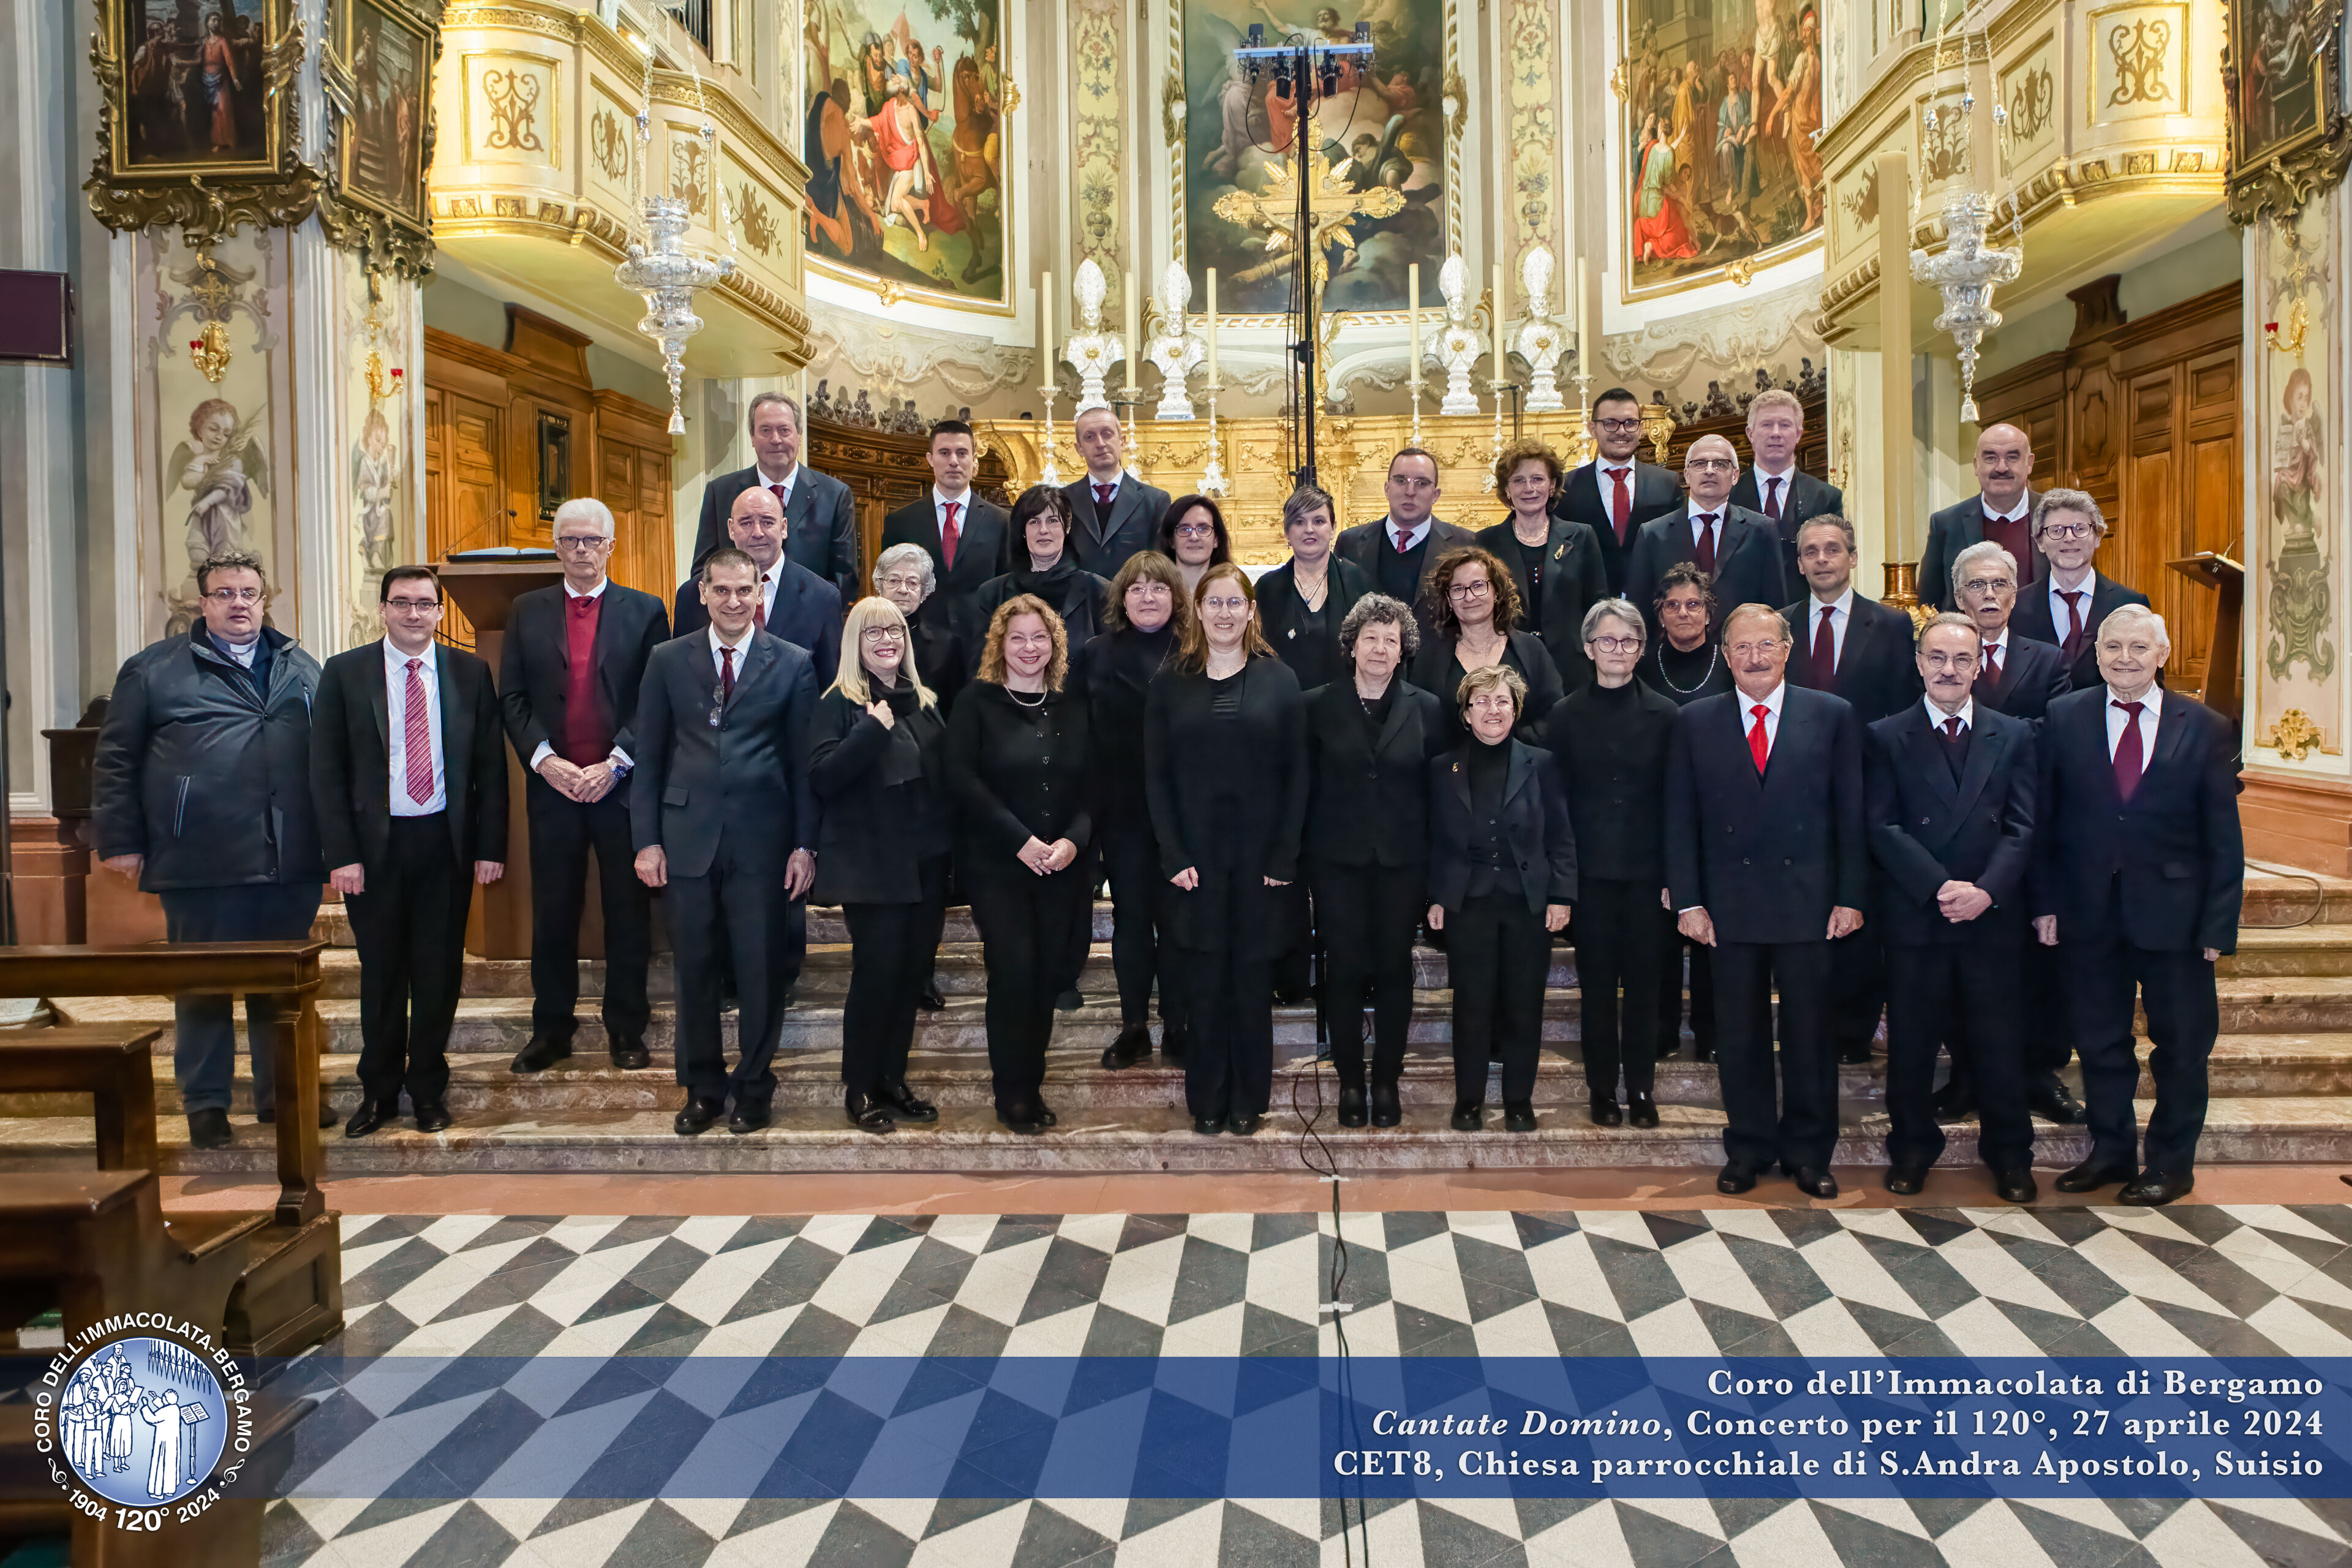 Coro dell'Immacolata di Bergamo - I concerti del 120° - Parrocchia di S.Andrea Apostolo, Suisio